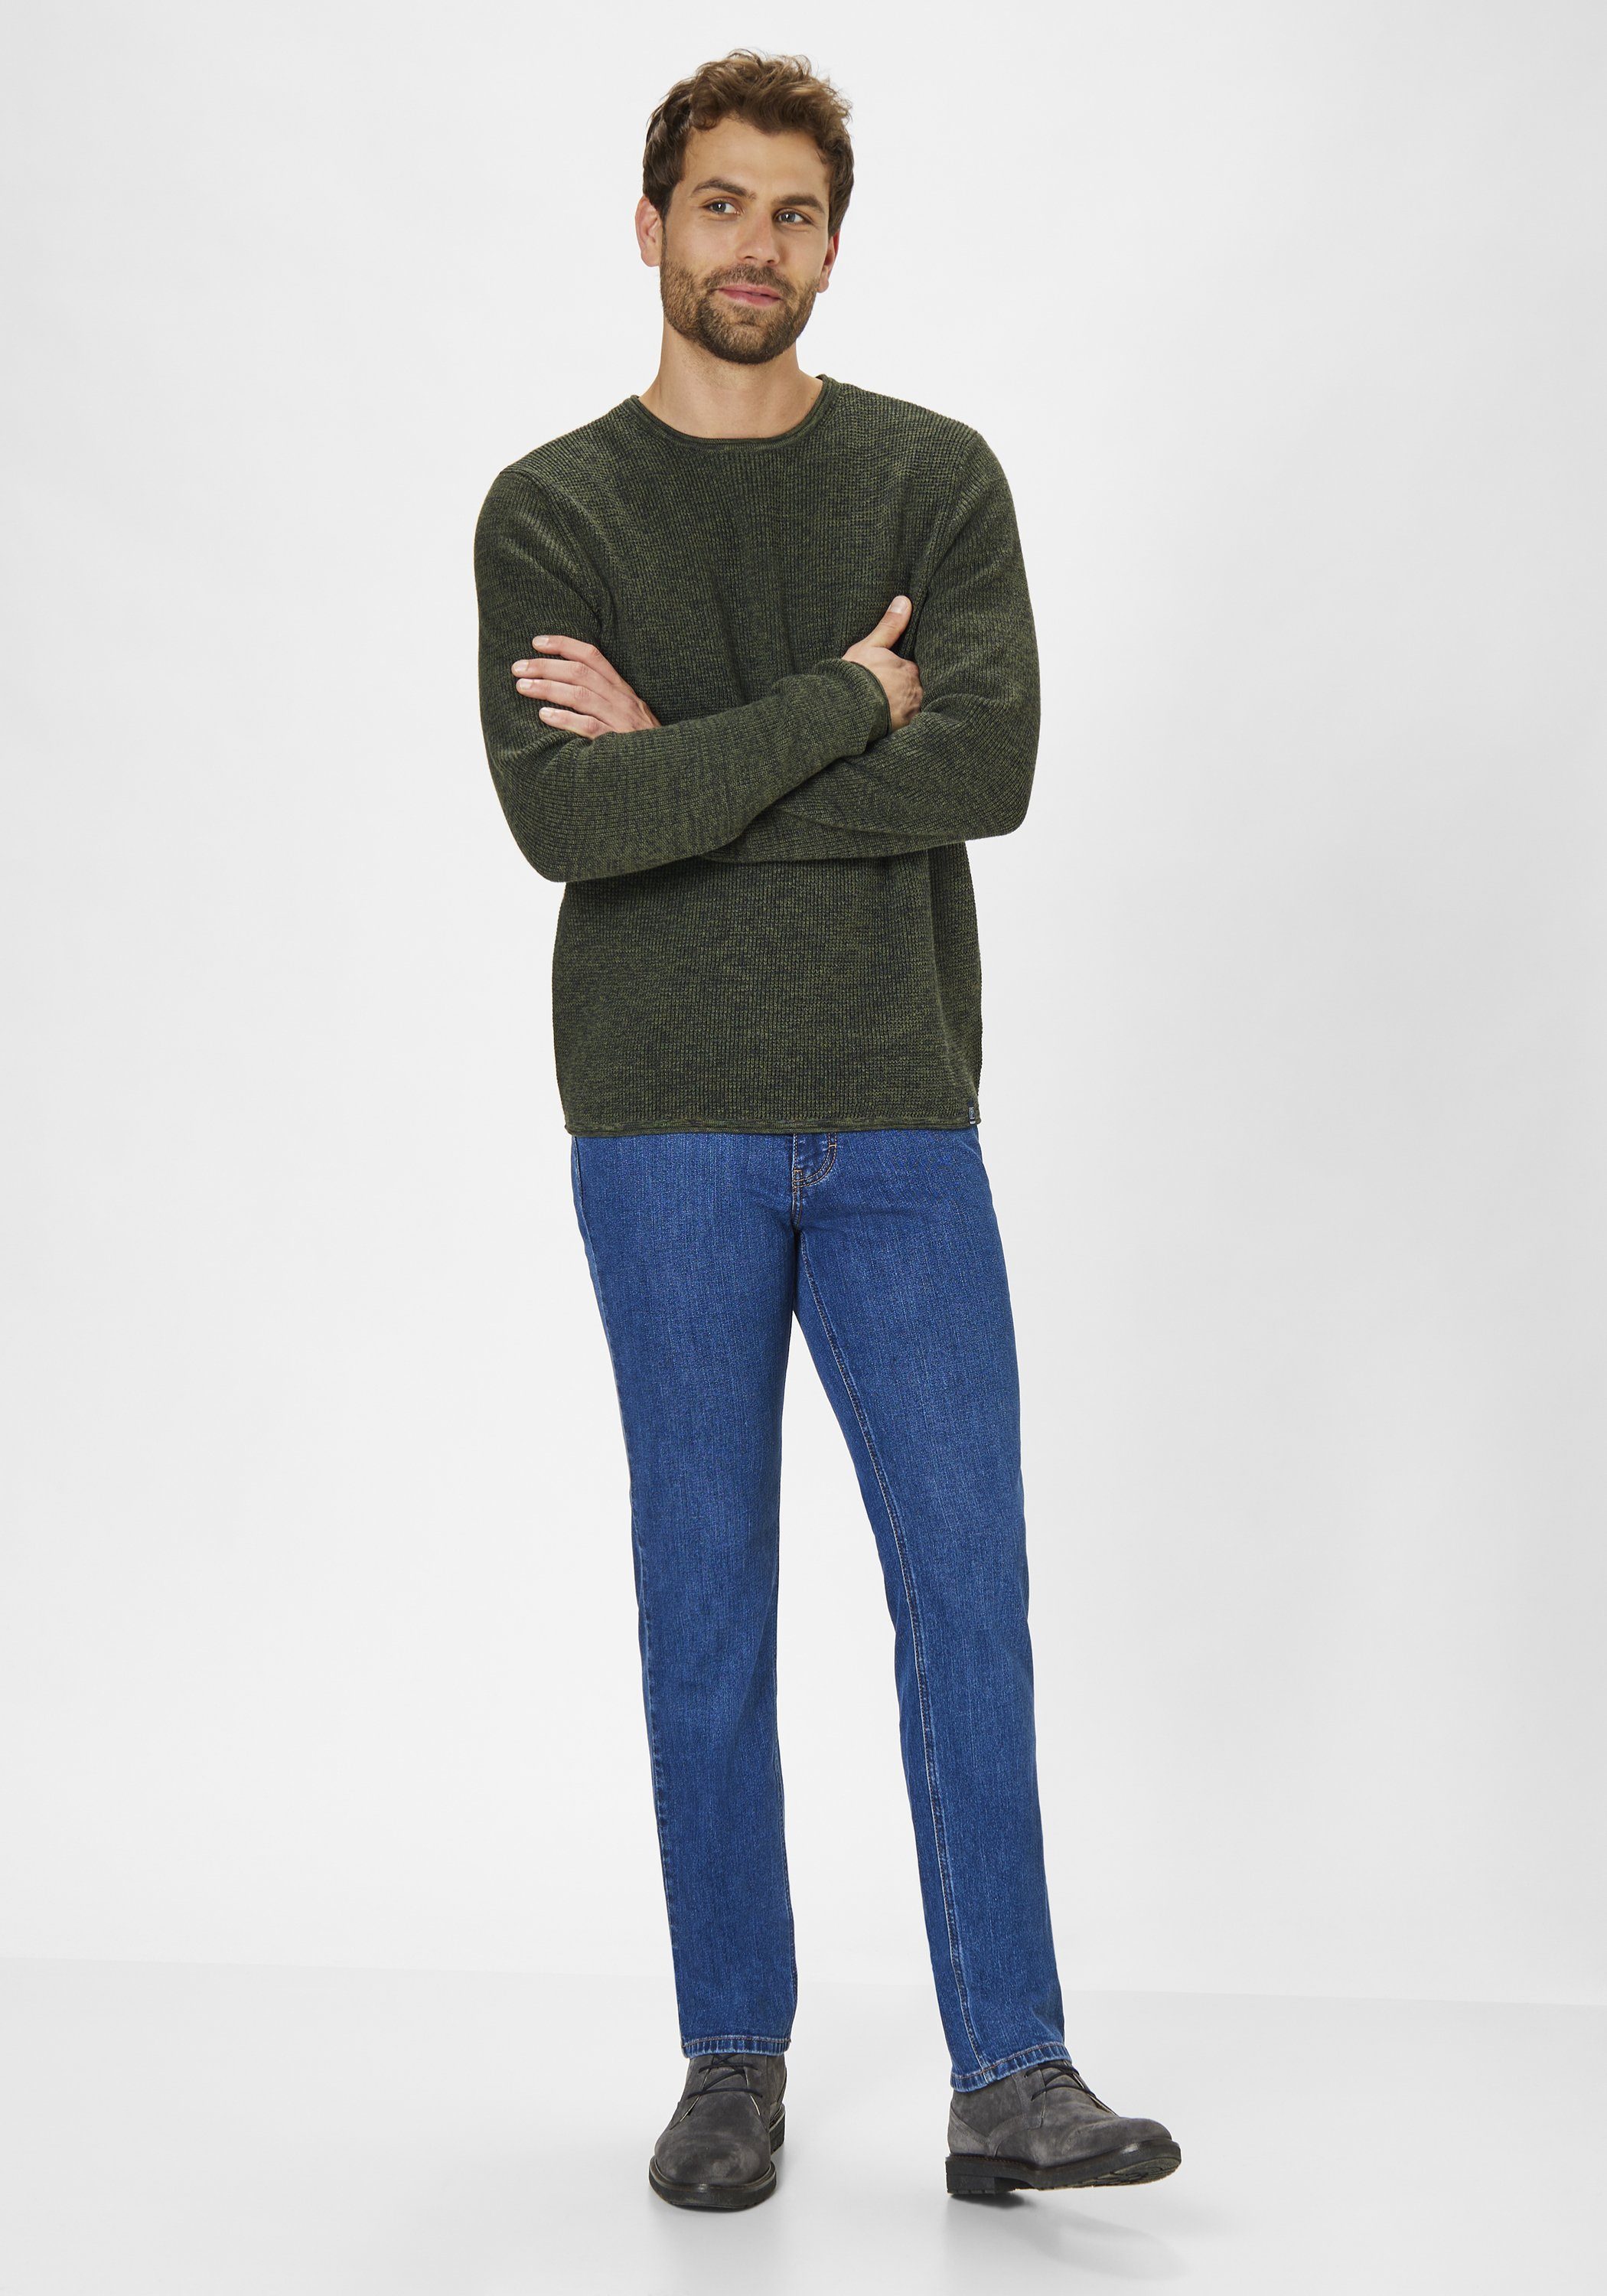 Paddock's PIPE Slim-fit-Jeans moustache Comfort blue Slim-Fit use Jeans Motion Elastizität deep &